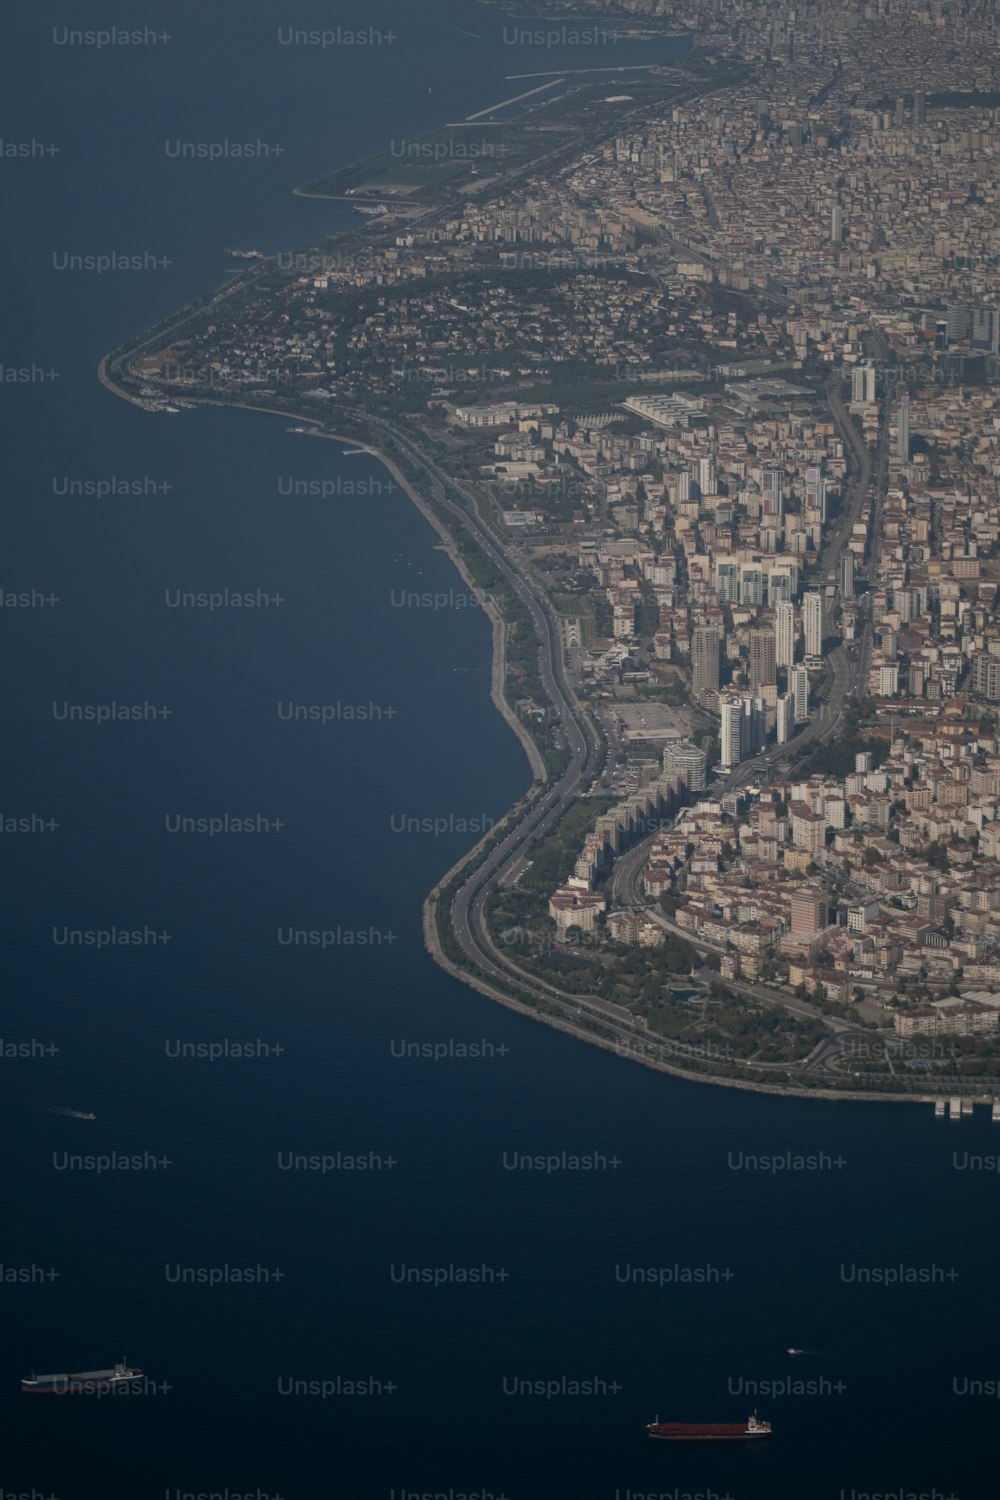 Luftaufnahme einer Stadt und eines Gewässers